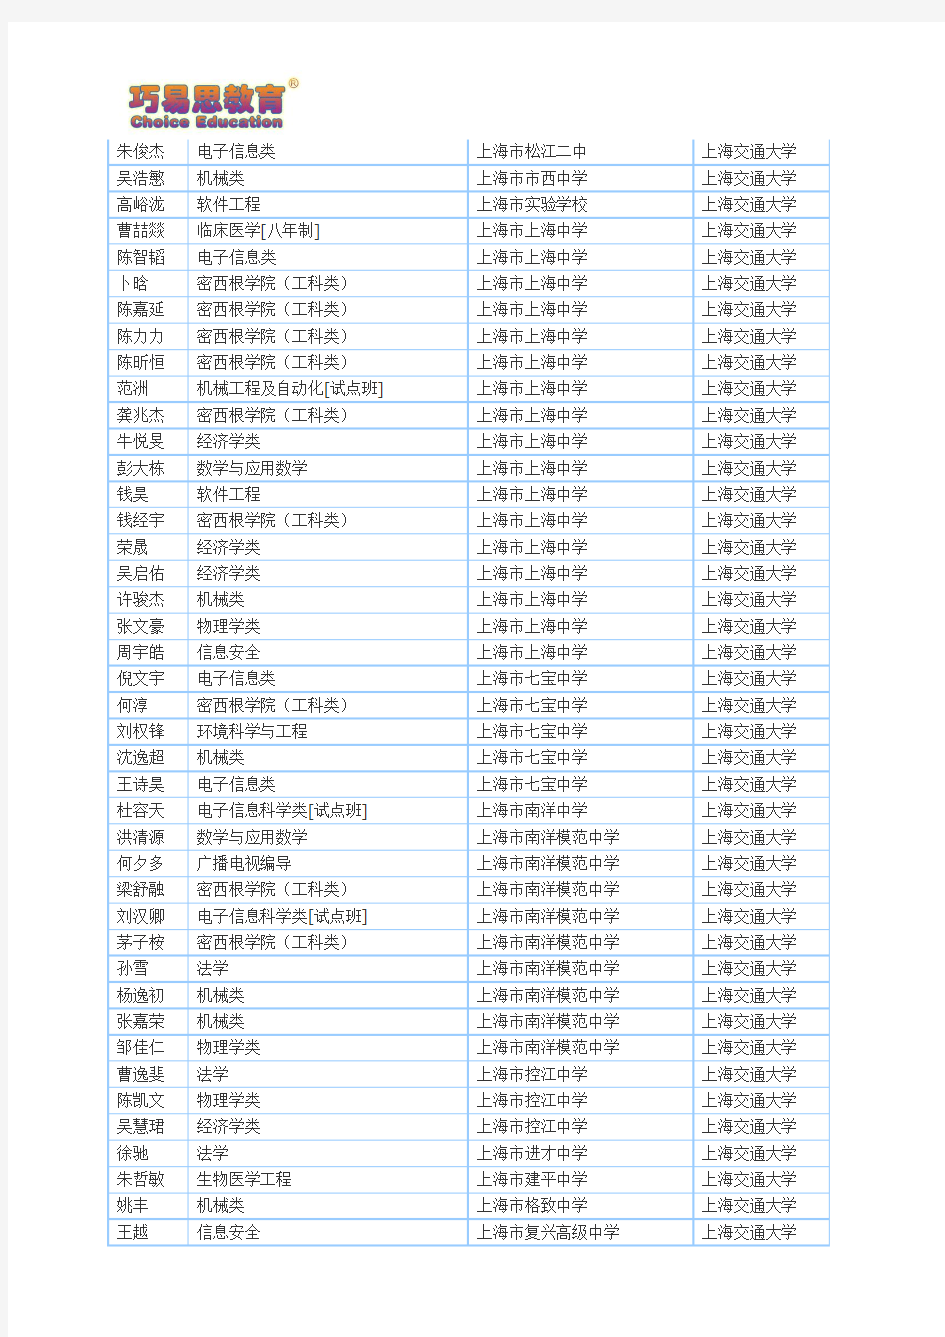 巧易思教育2014年上海交通大学、复旦大学自主招生预录取学员名单